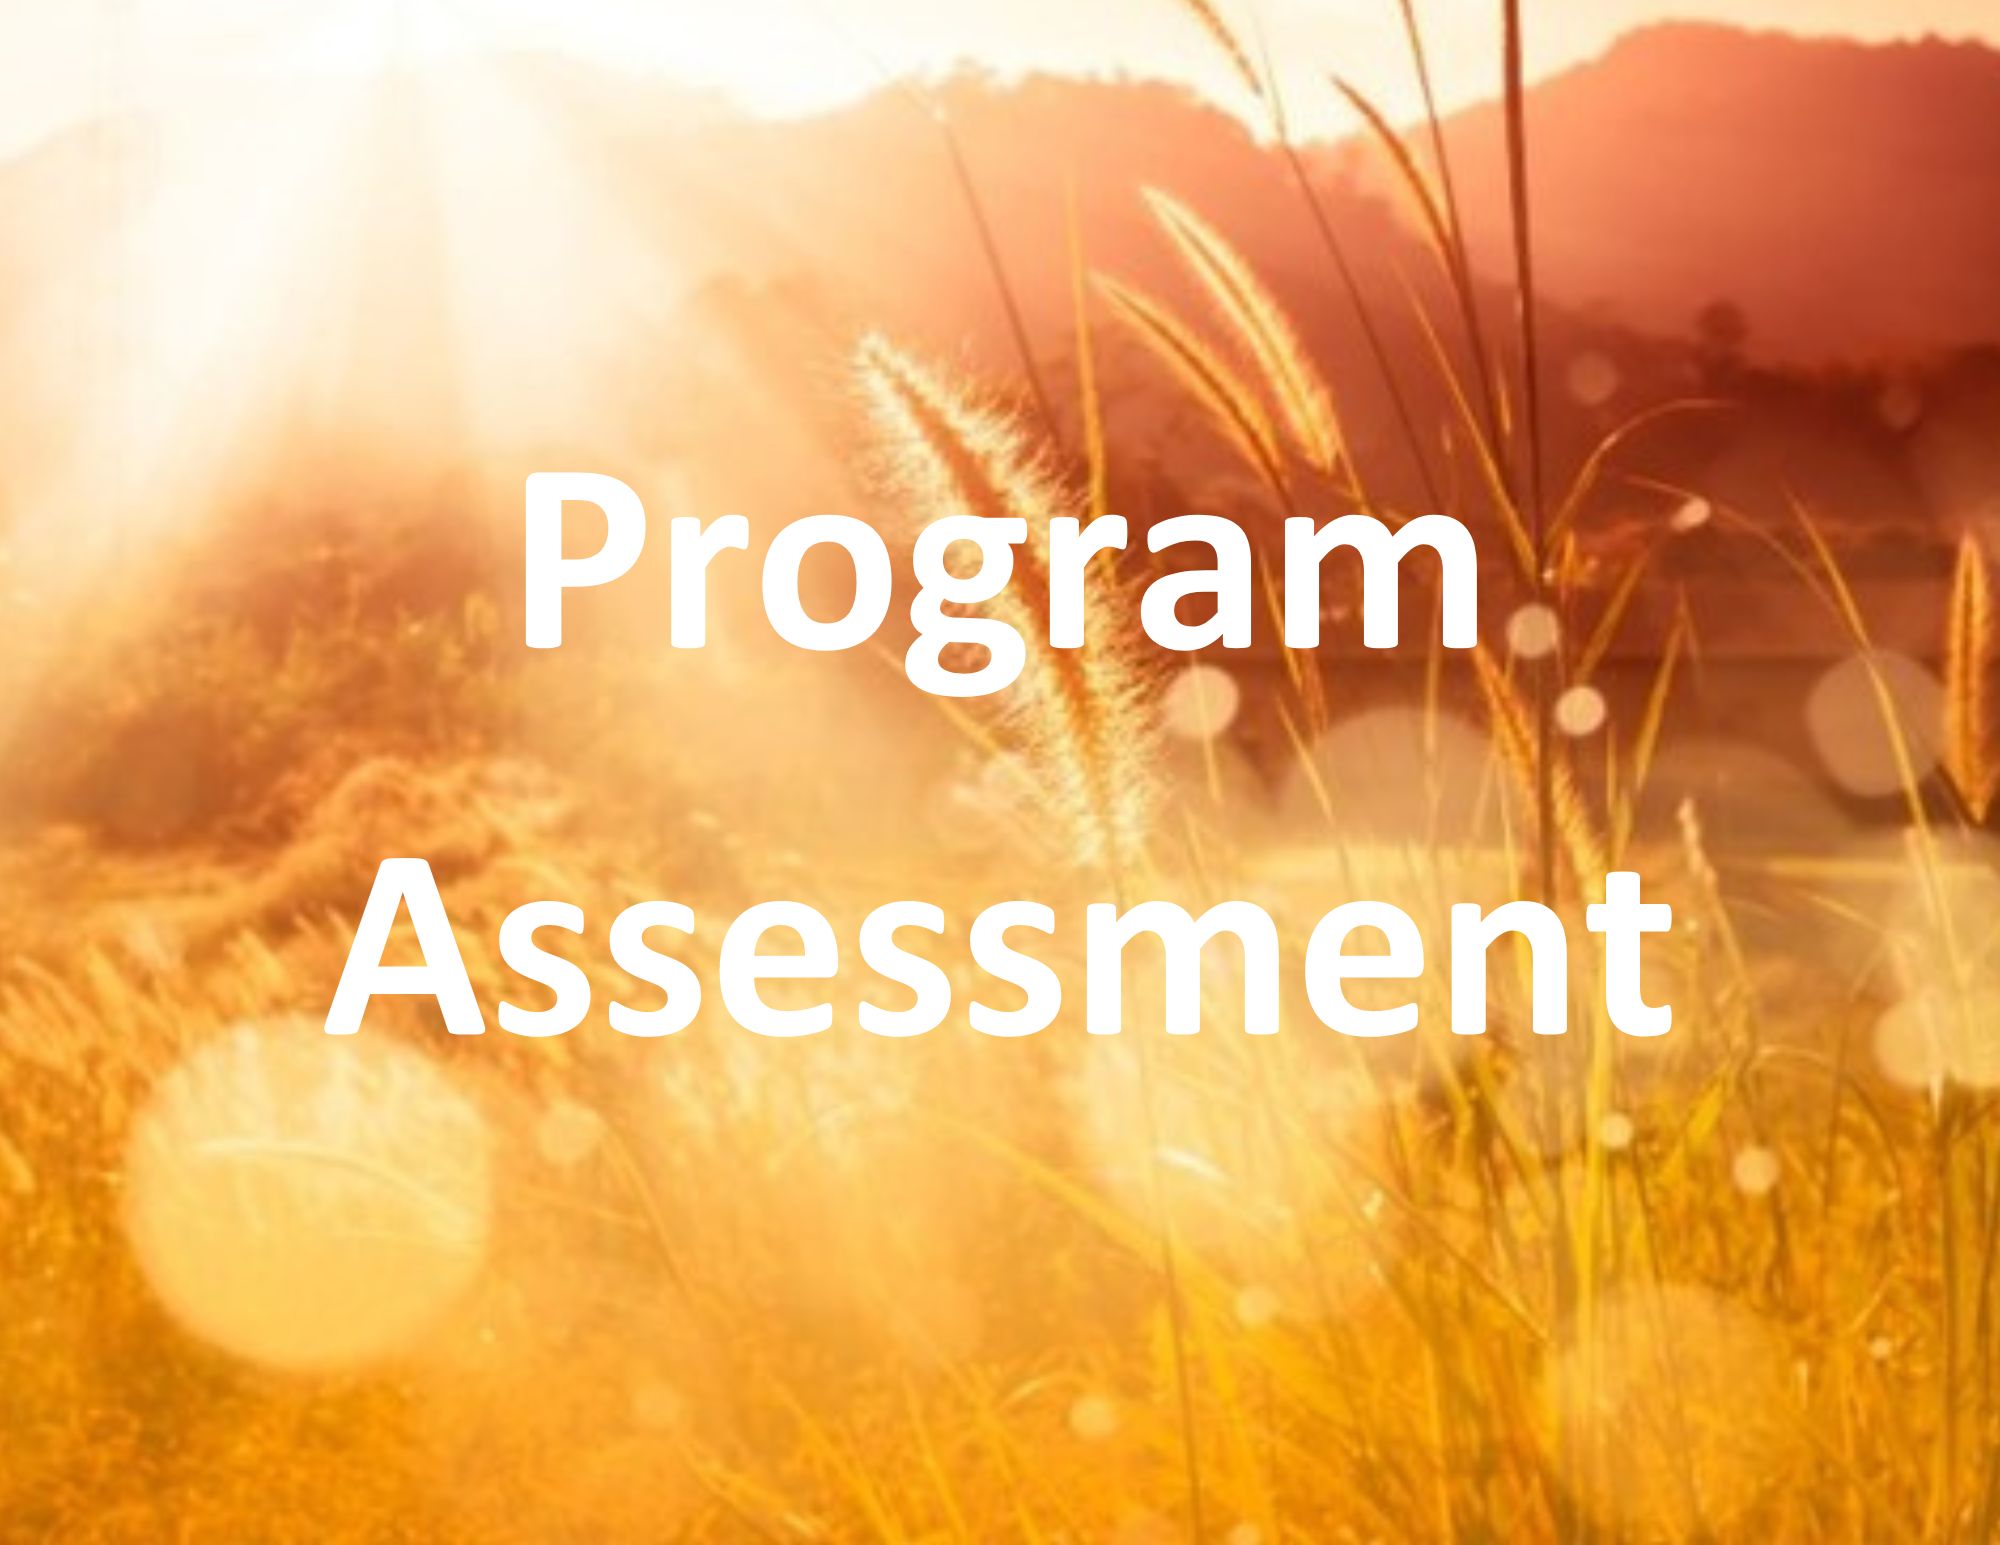 Program Assessment